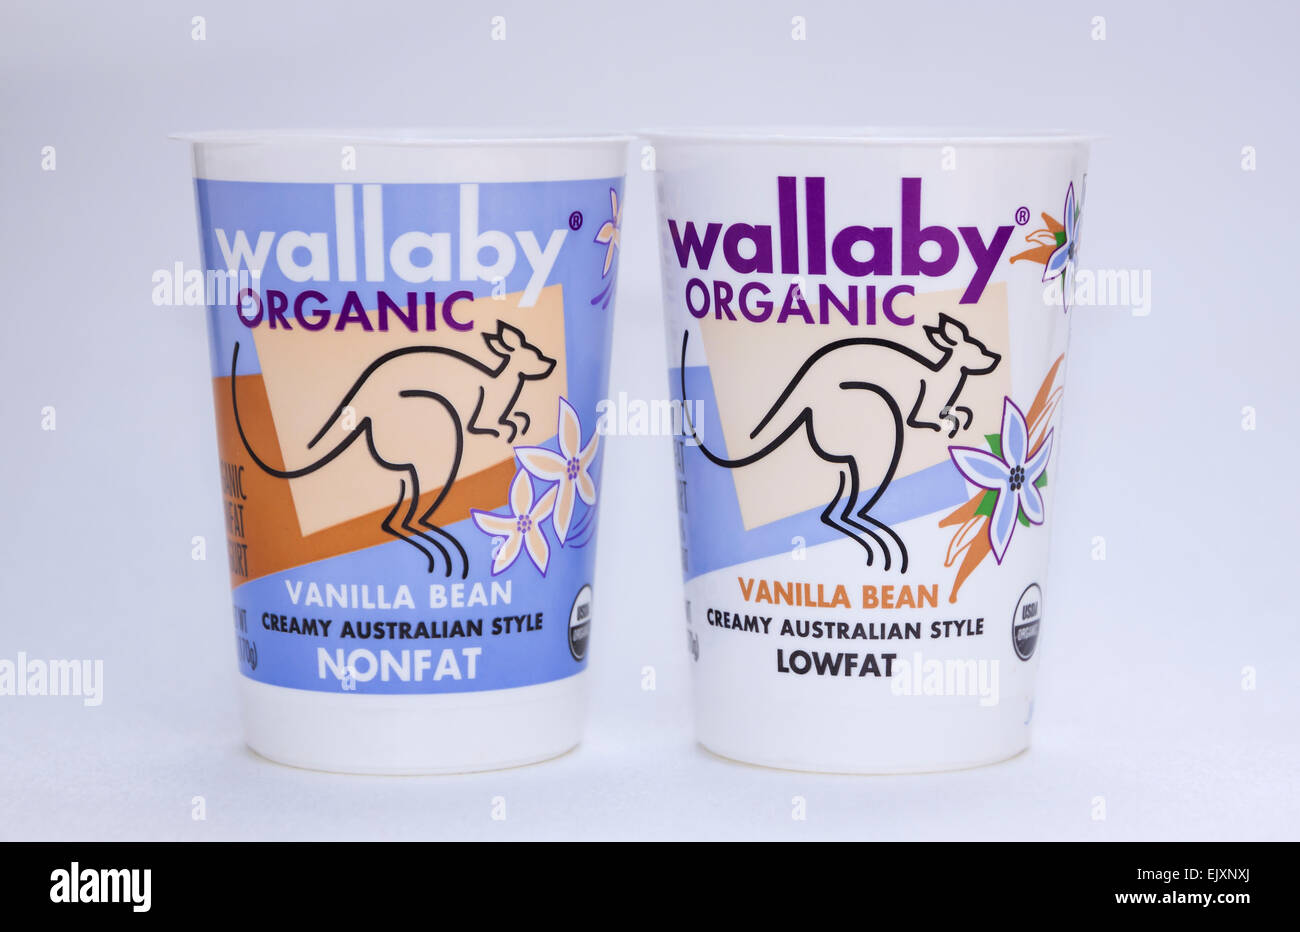 (Stateless), contenants de yogourt sans gras et de la même marque, le Wallaby. Banque D'Images